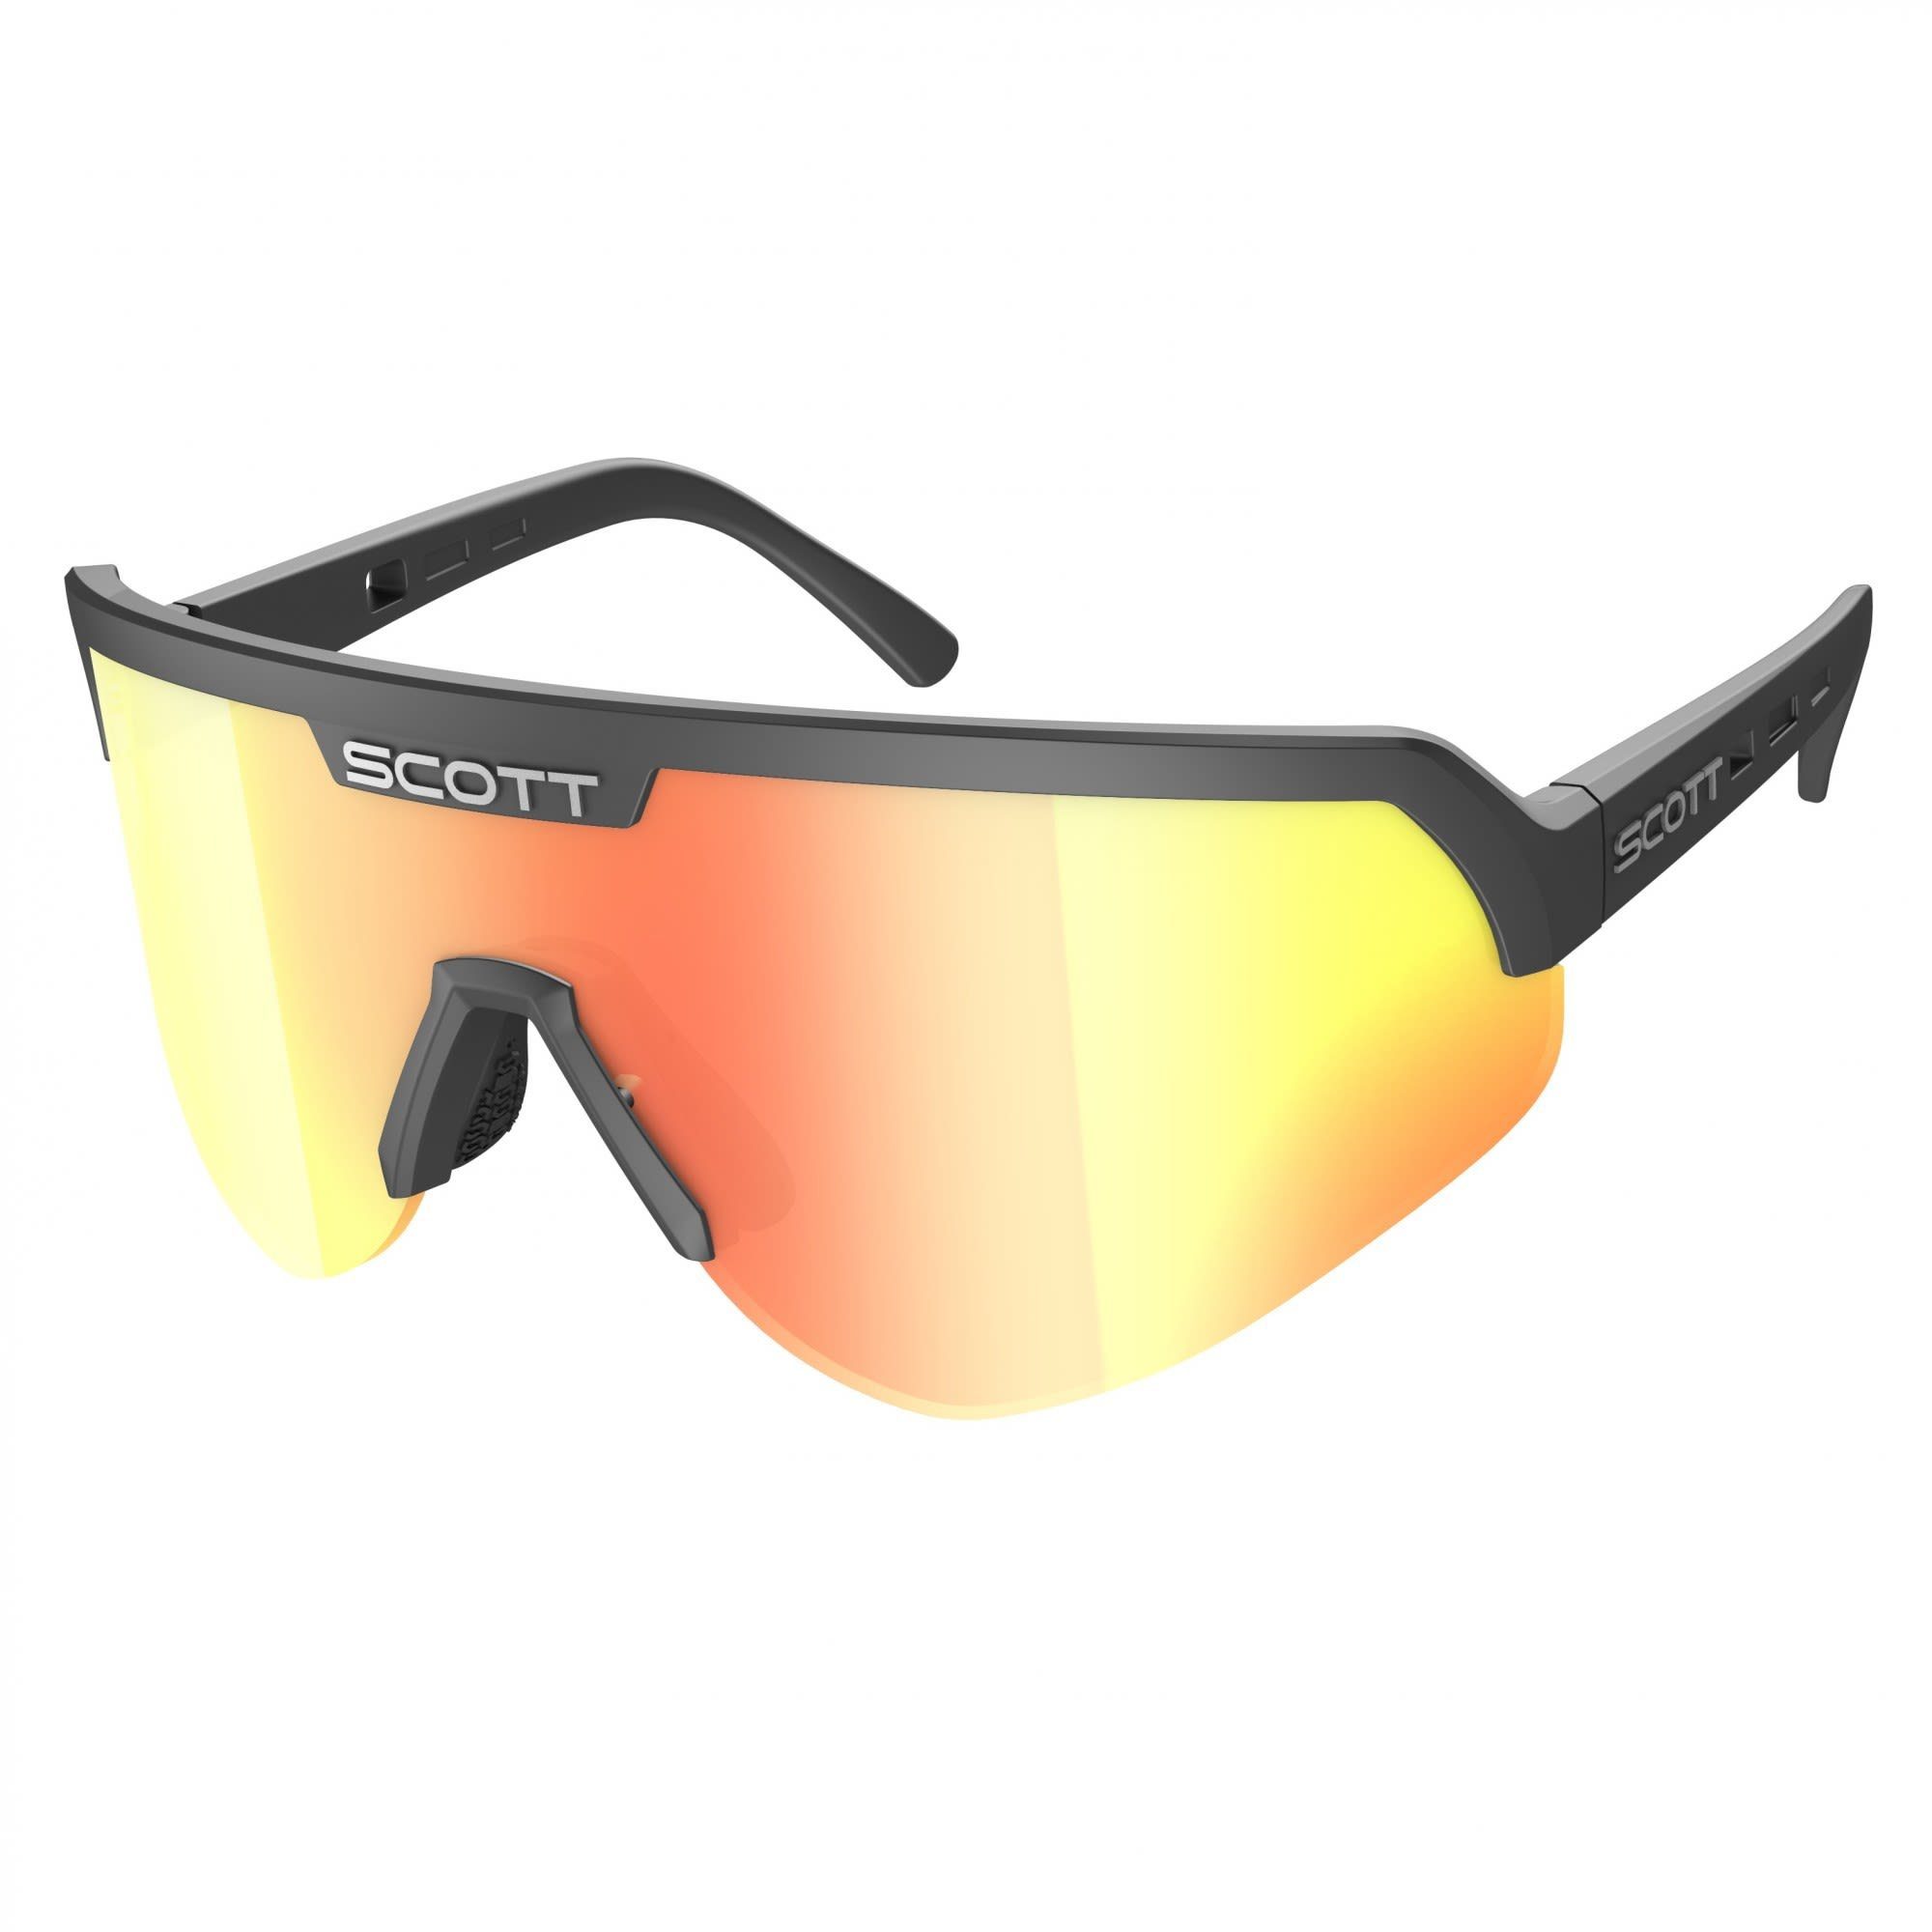 Scott Fahrradbrille Scott Sport Sunglasses Red Black Accessoires - Chrome Shield